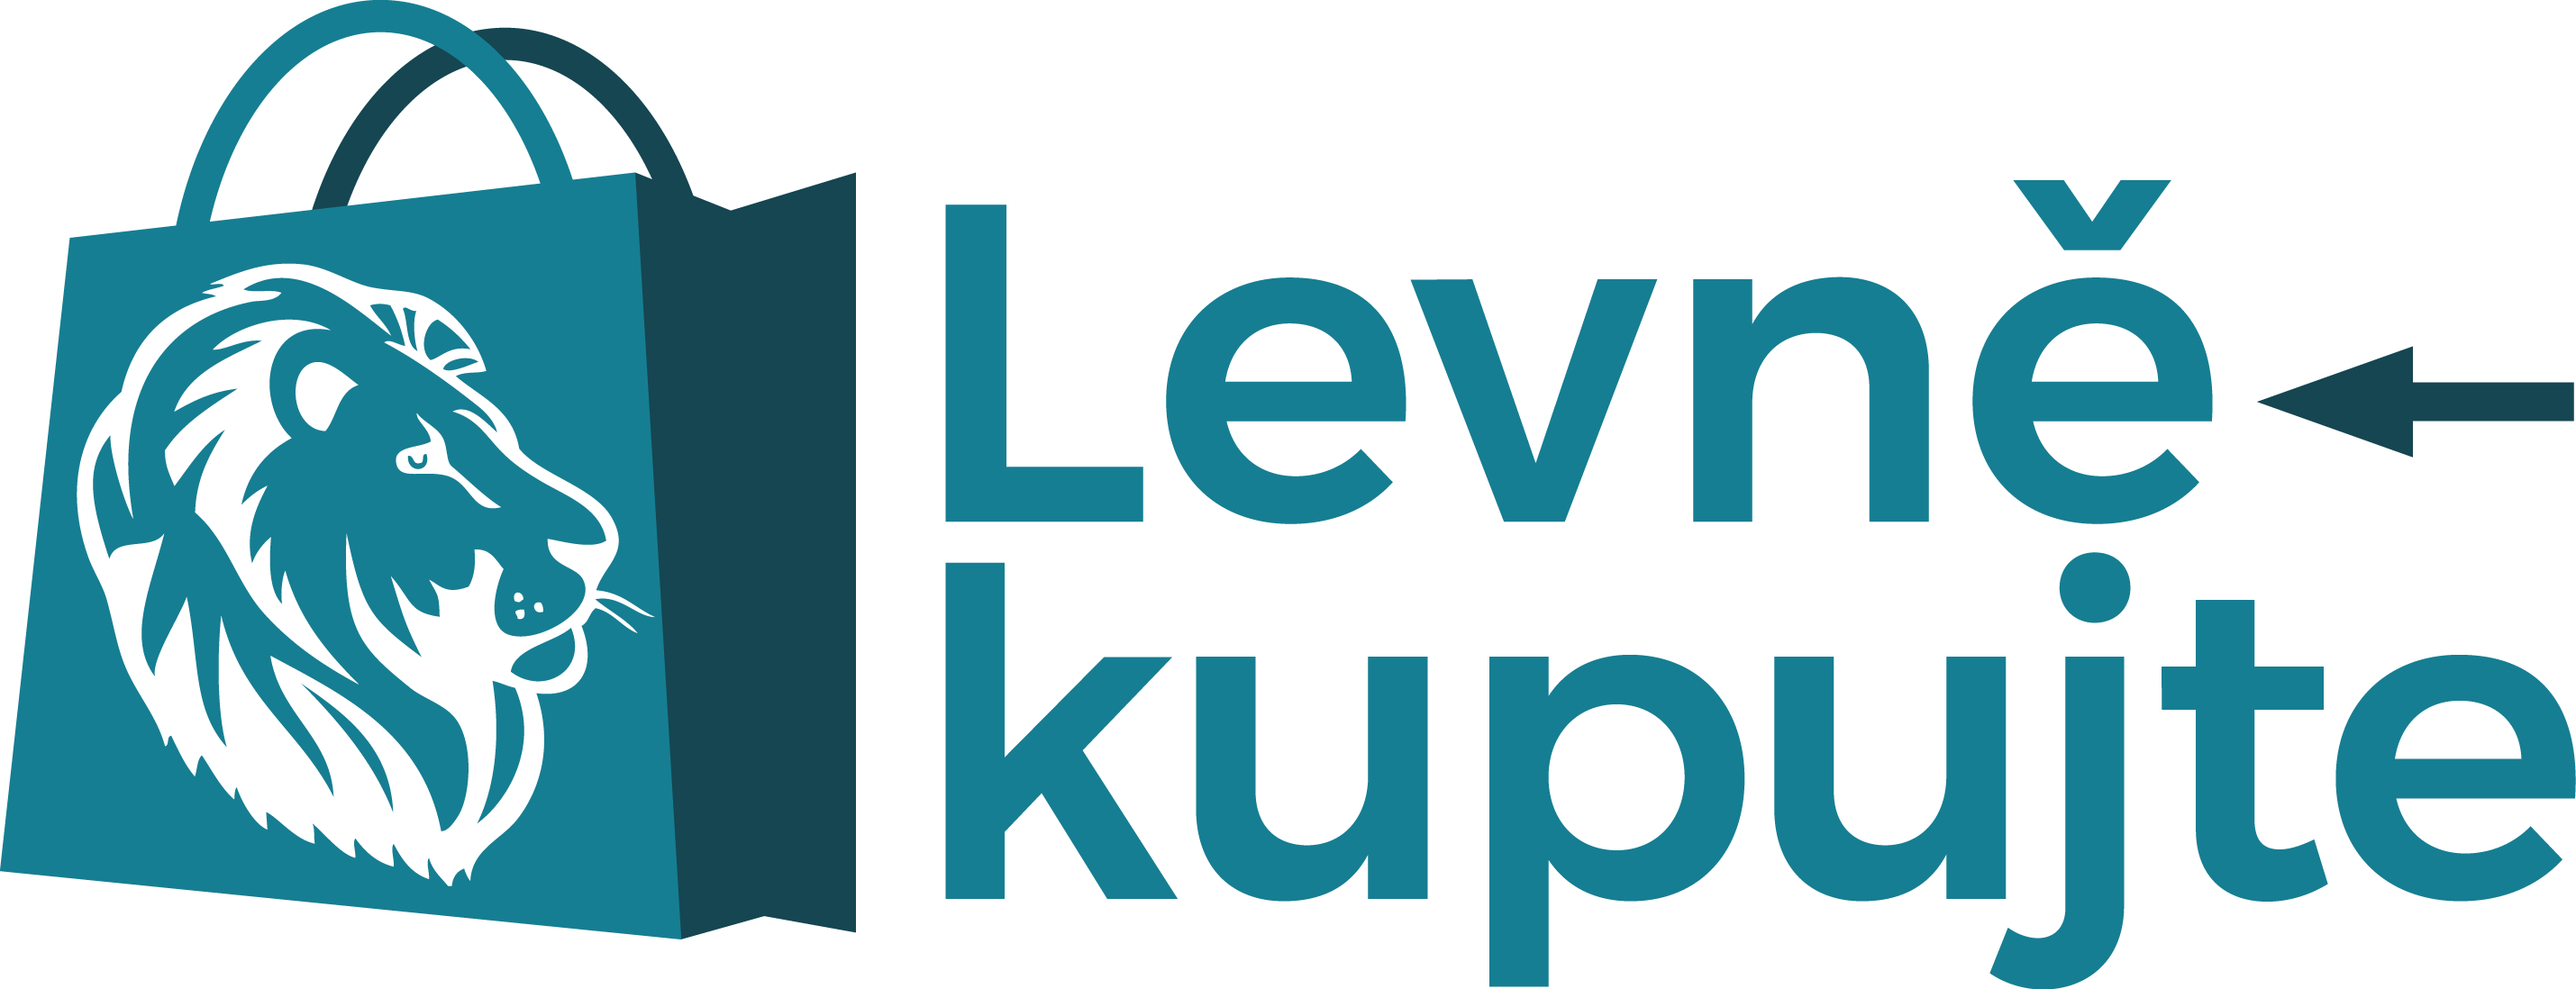 Logo Levne Kupujte_blue.png